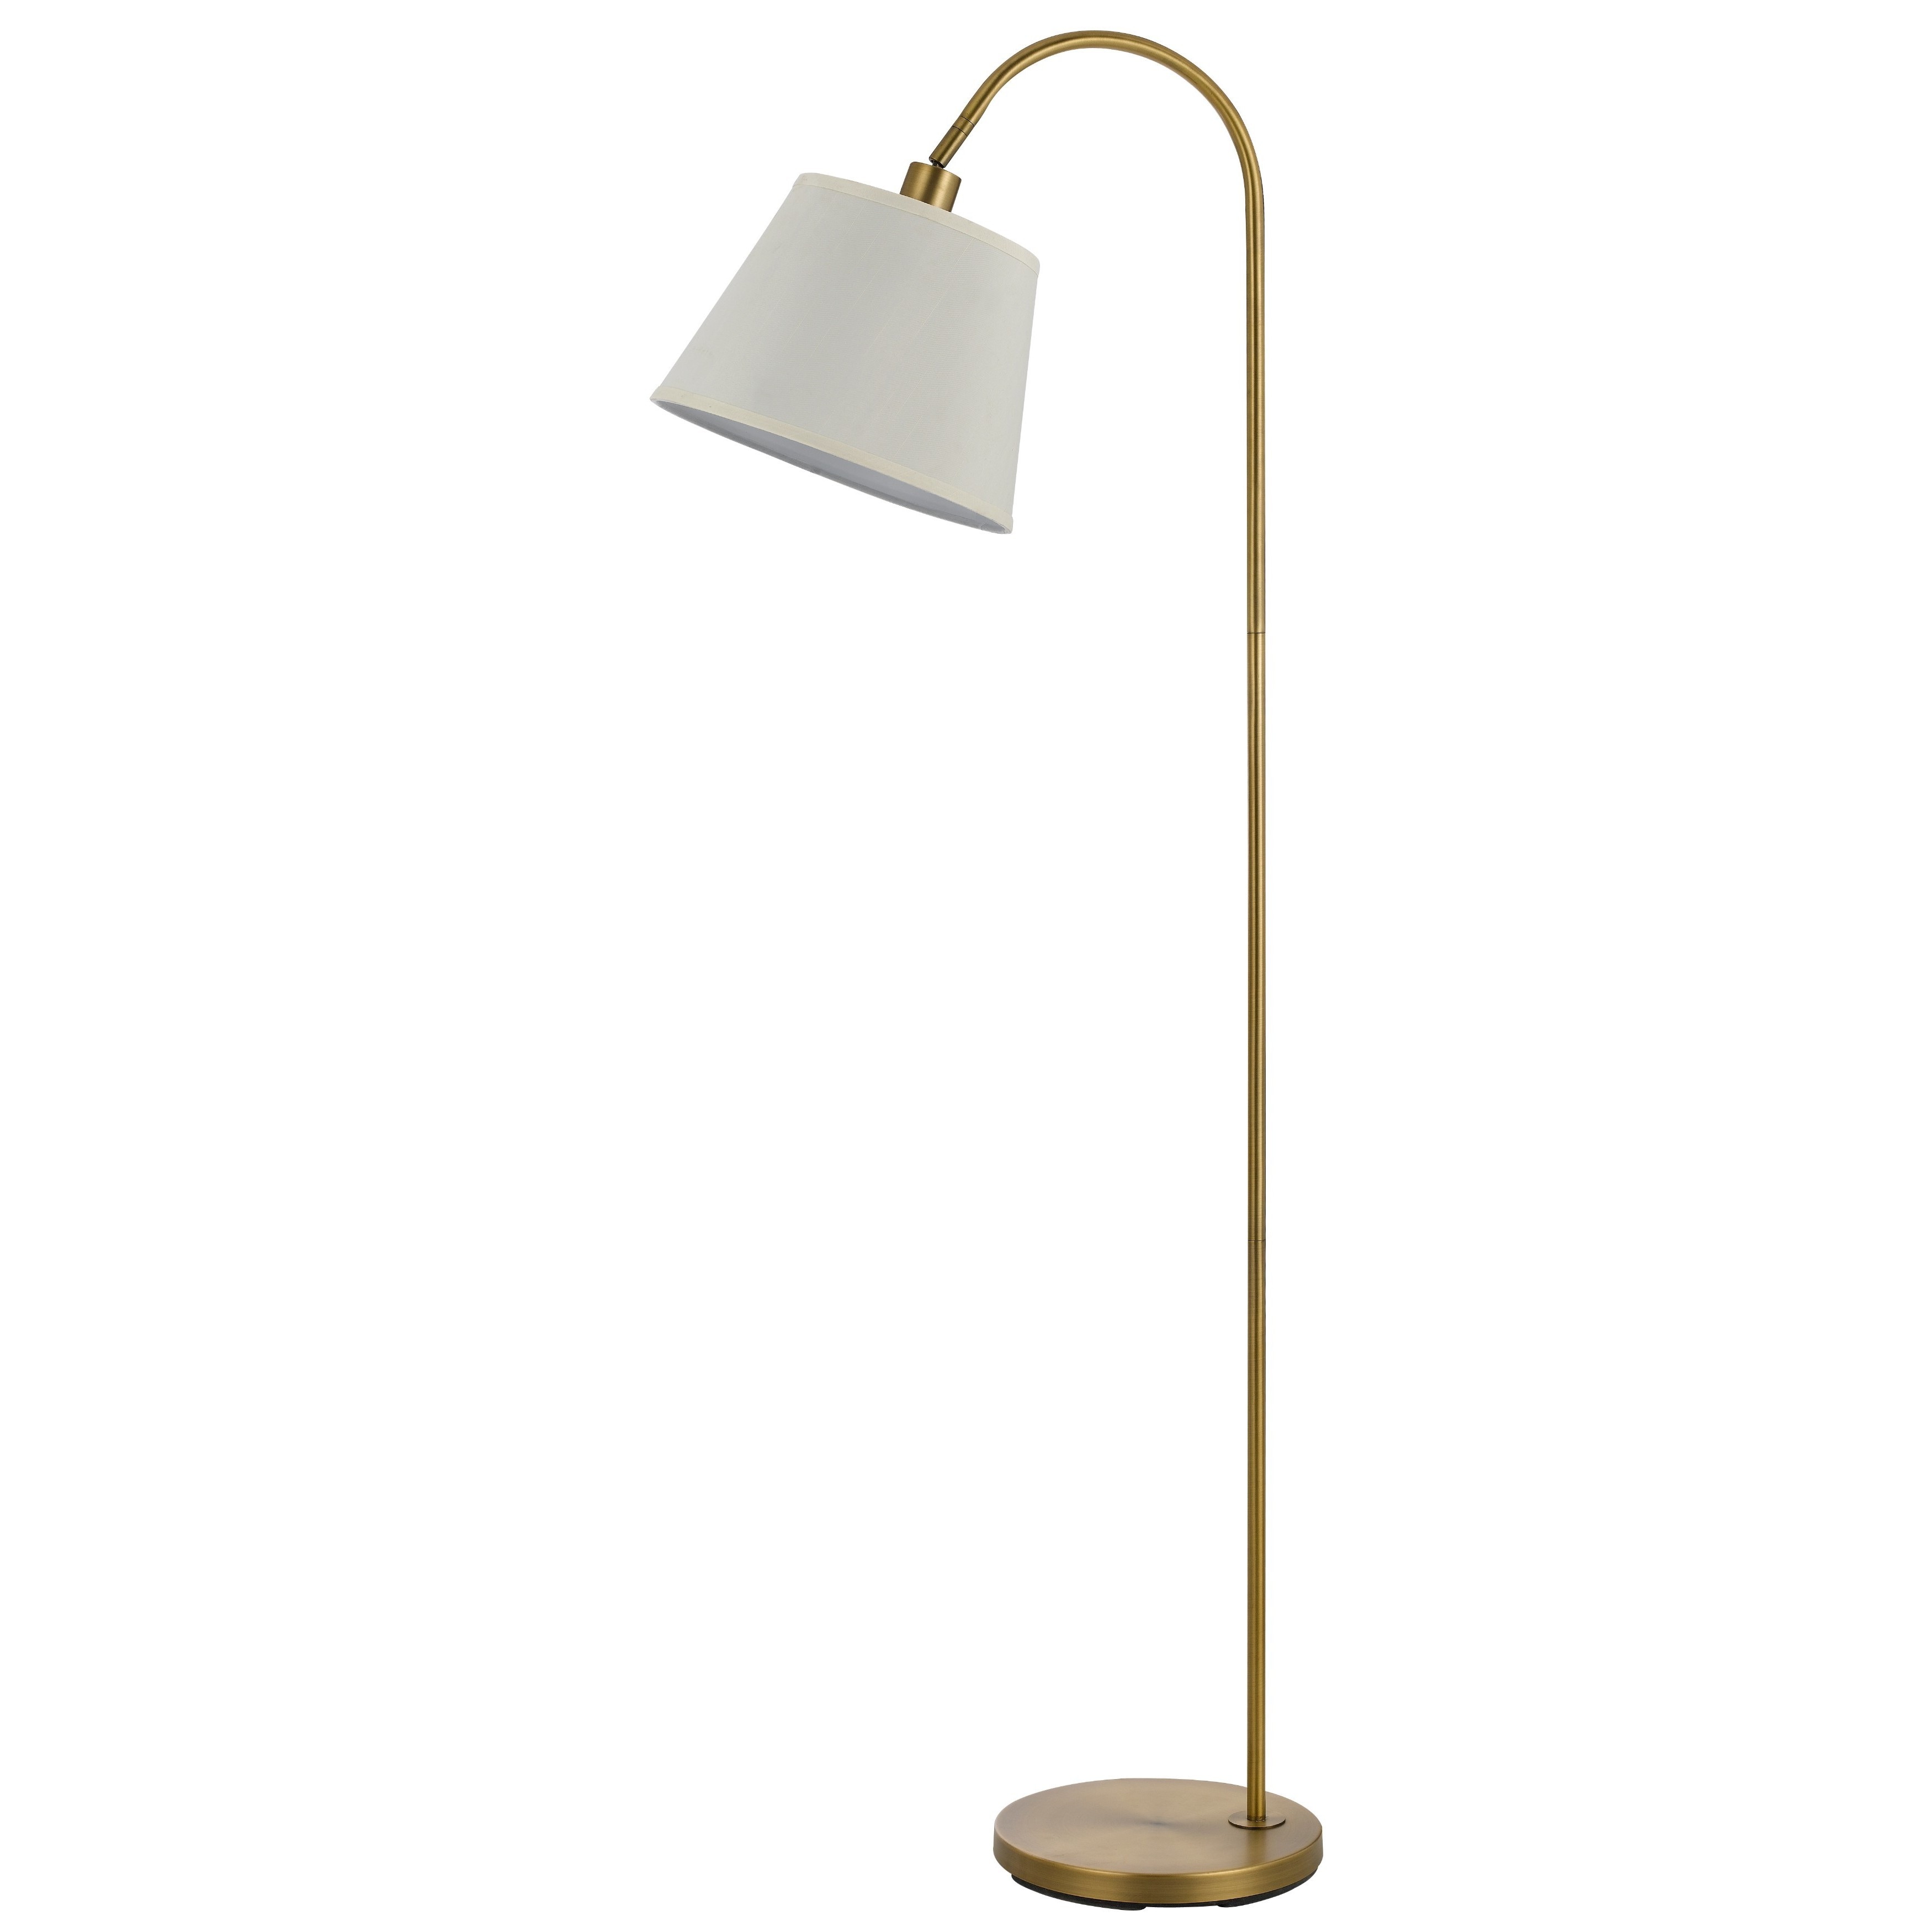 Bachelor opleiding Herhaald Duidelijk maken Covington Metal 60-watt Floor Lamp - On Sale - Overstock - 13682534